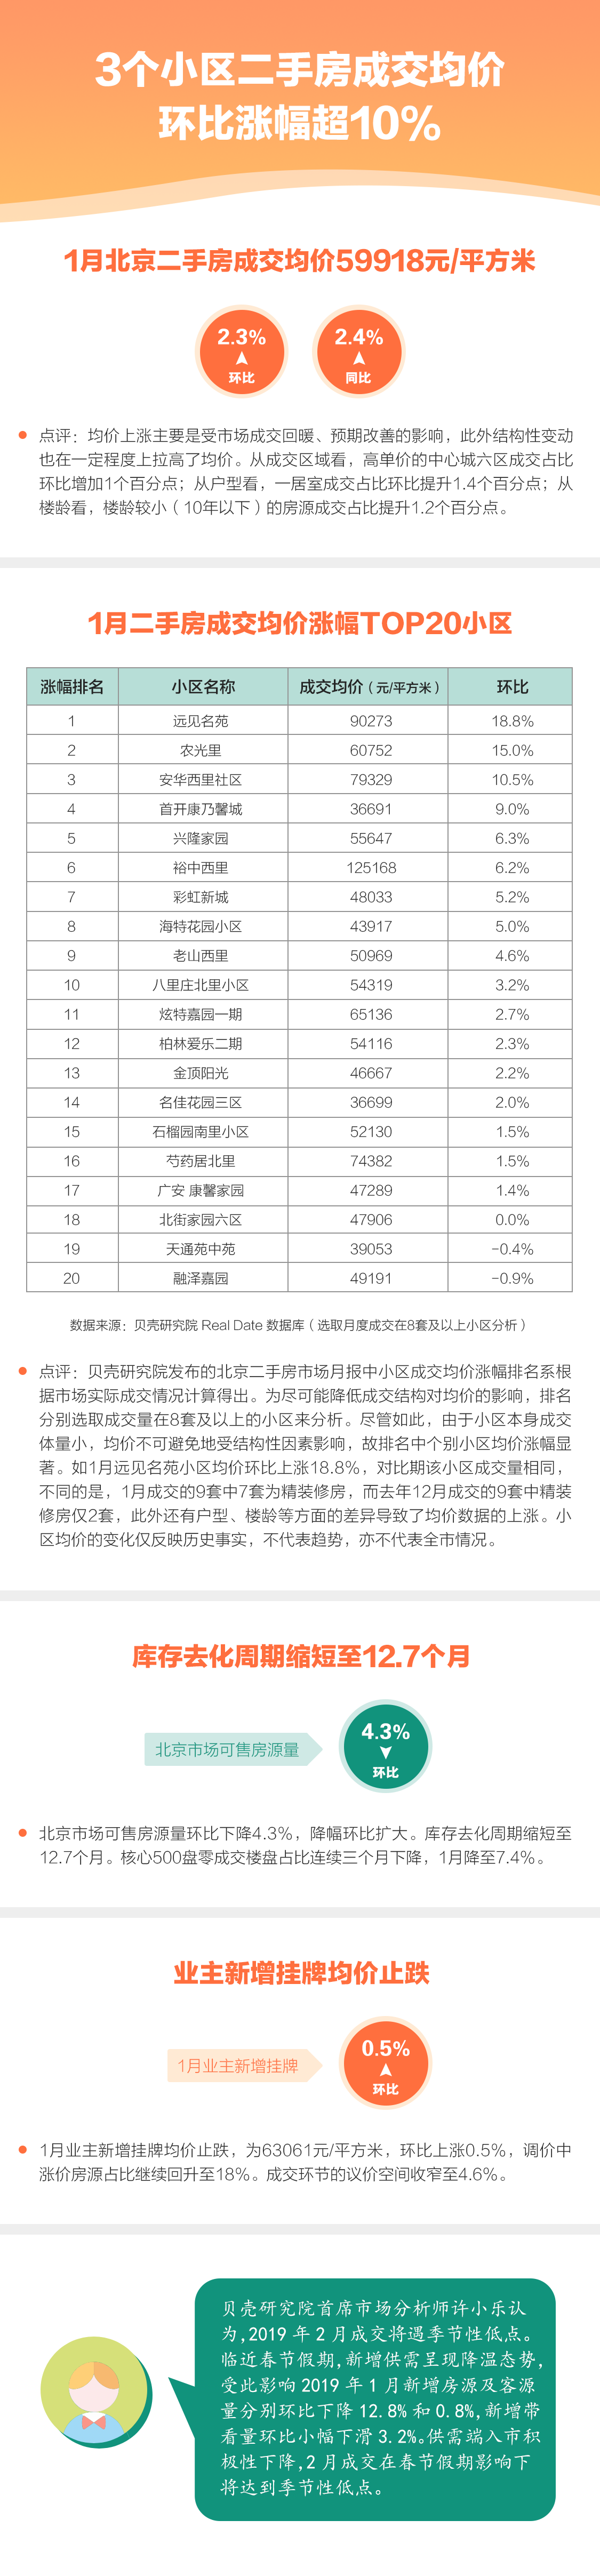 1月北京17个小区二手房成交均价环比上涨